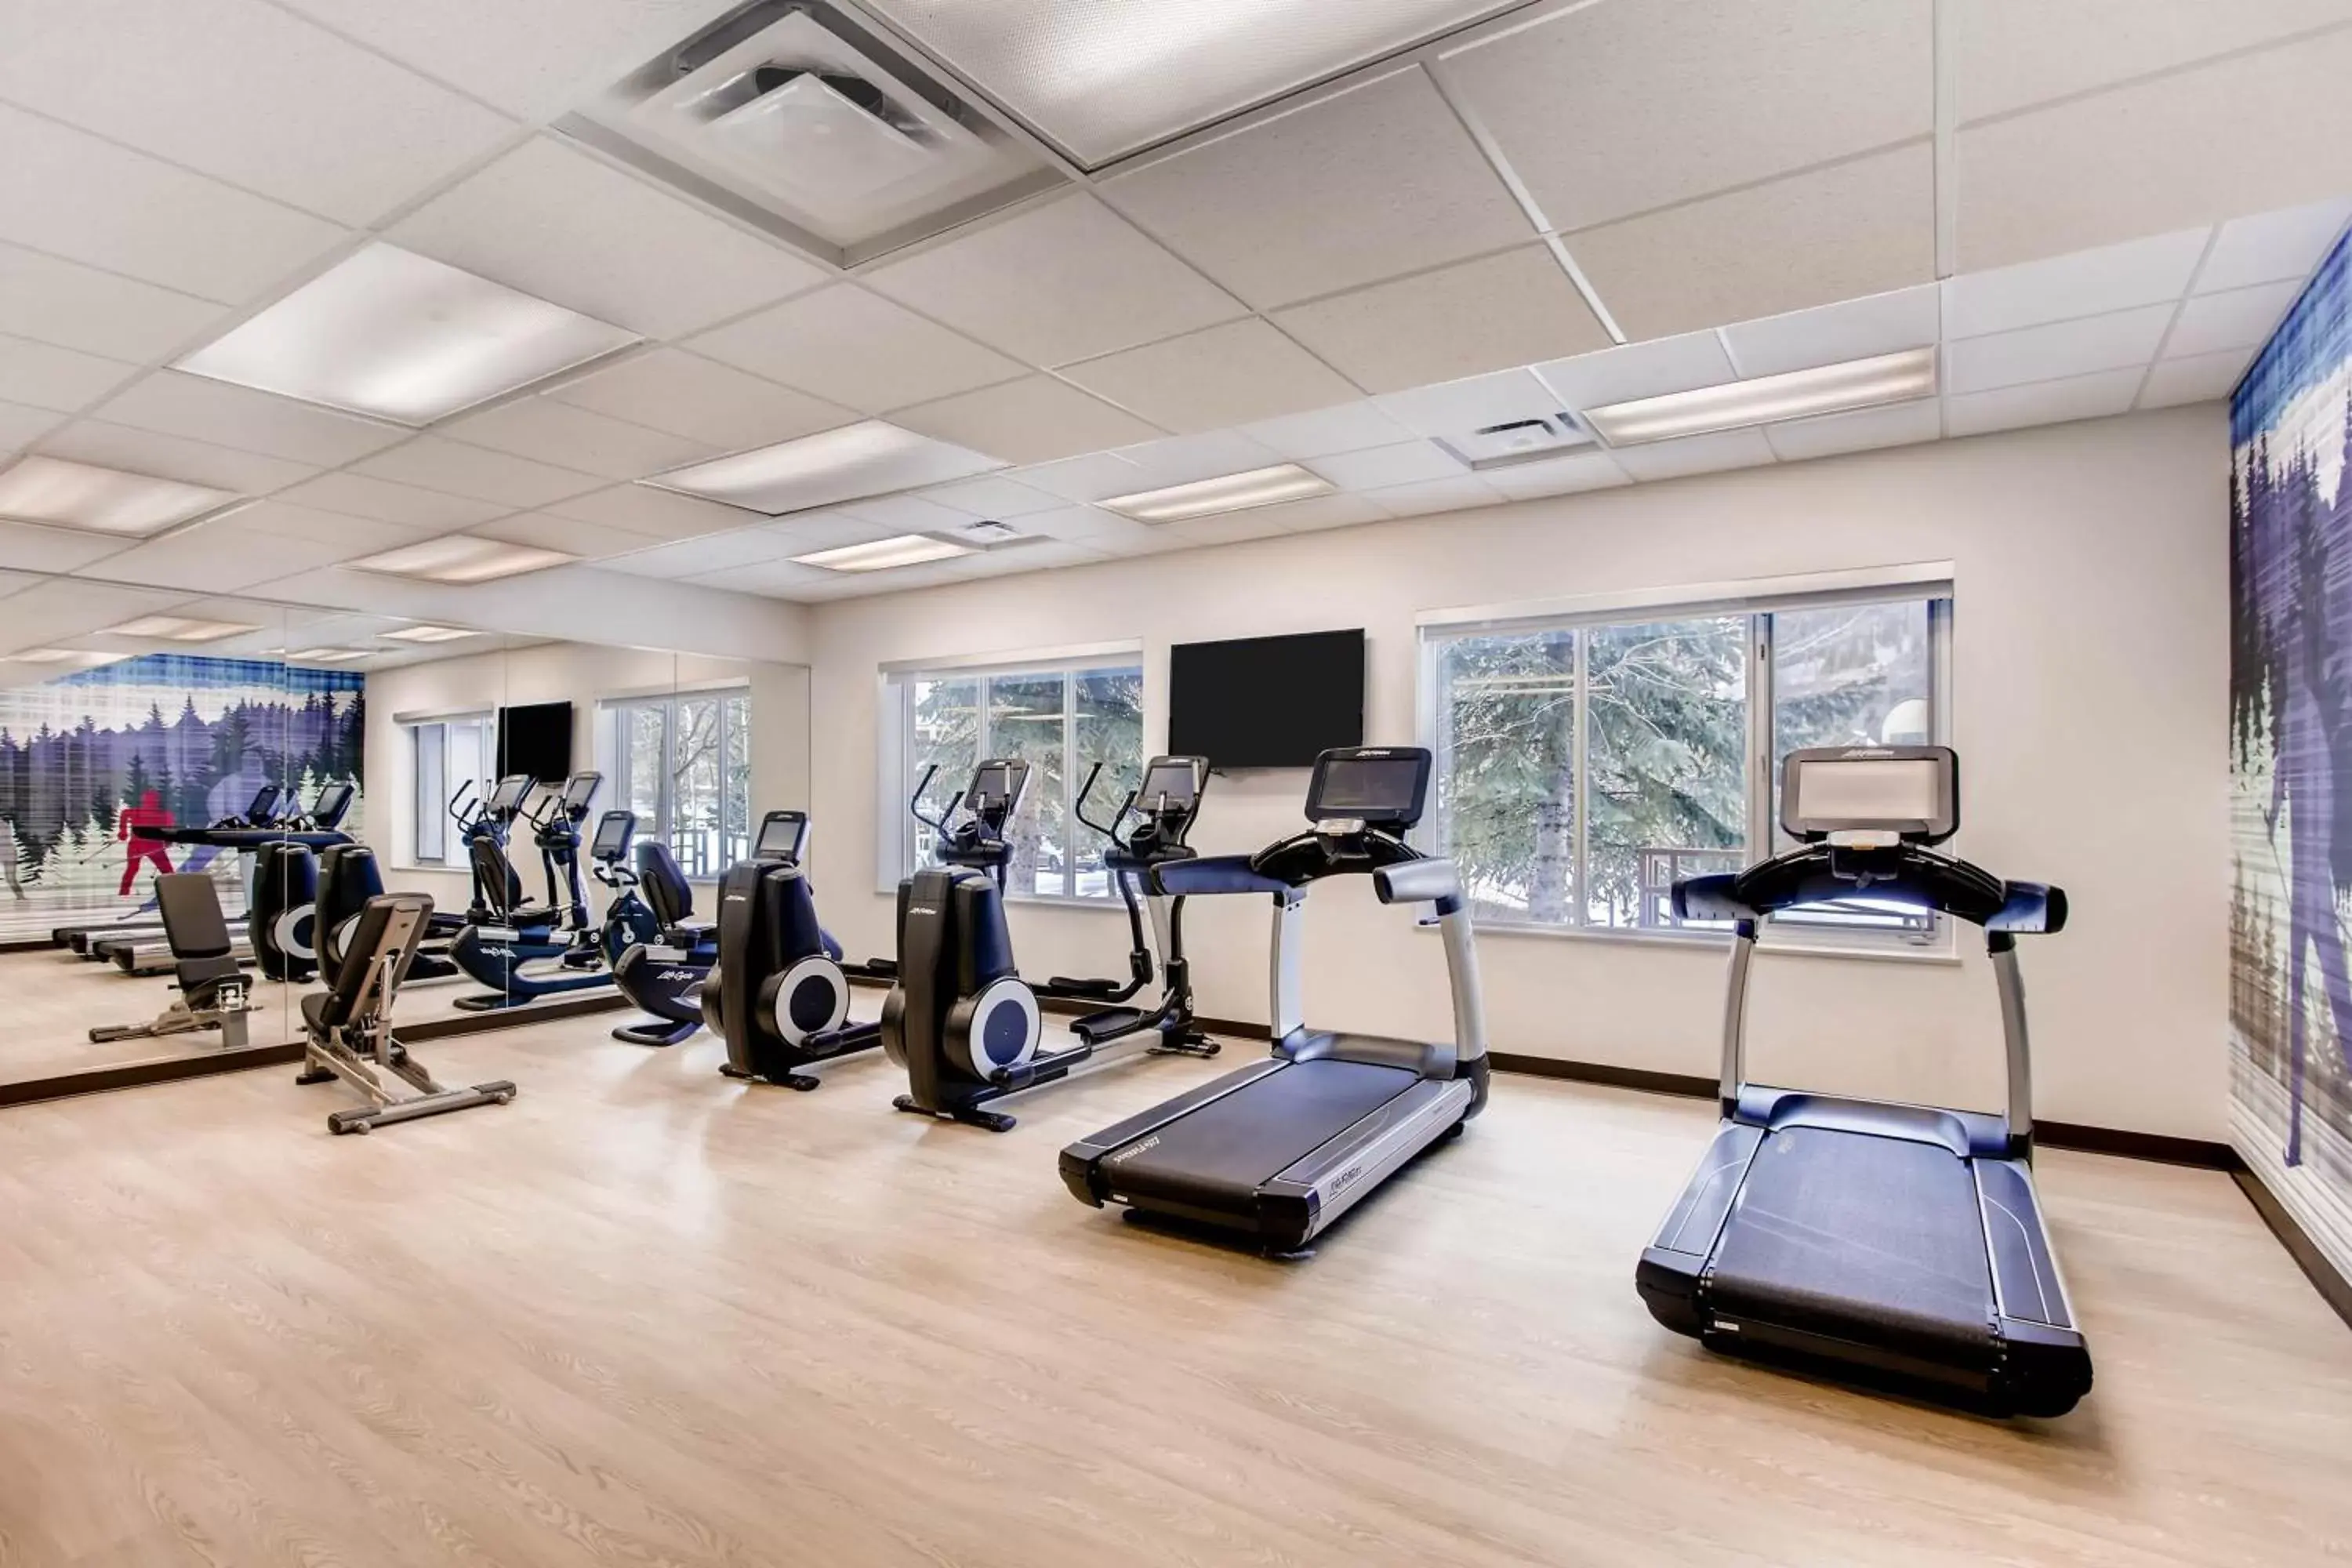 Fitness centre/facilities, Fitness Center/Facilities in Hyatt Place Keystone